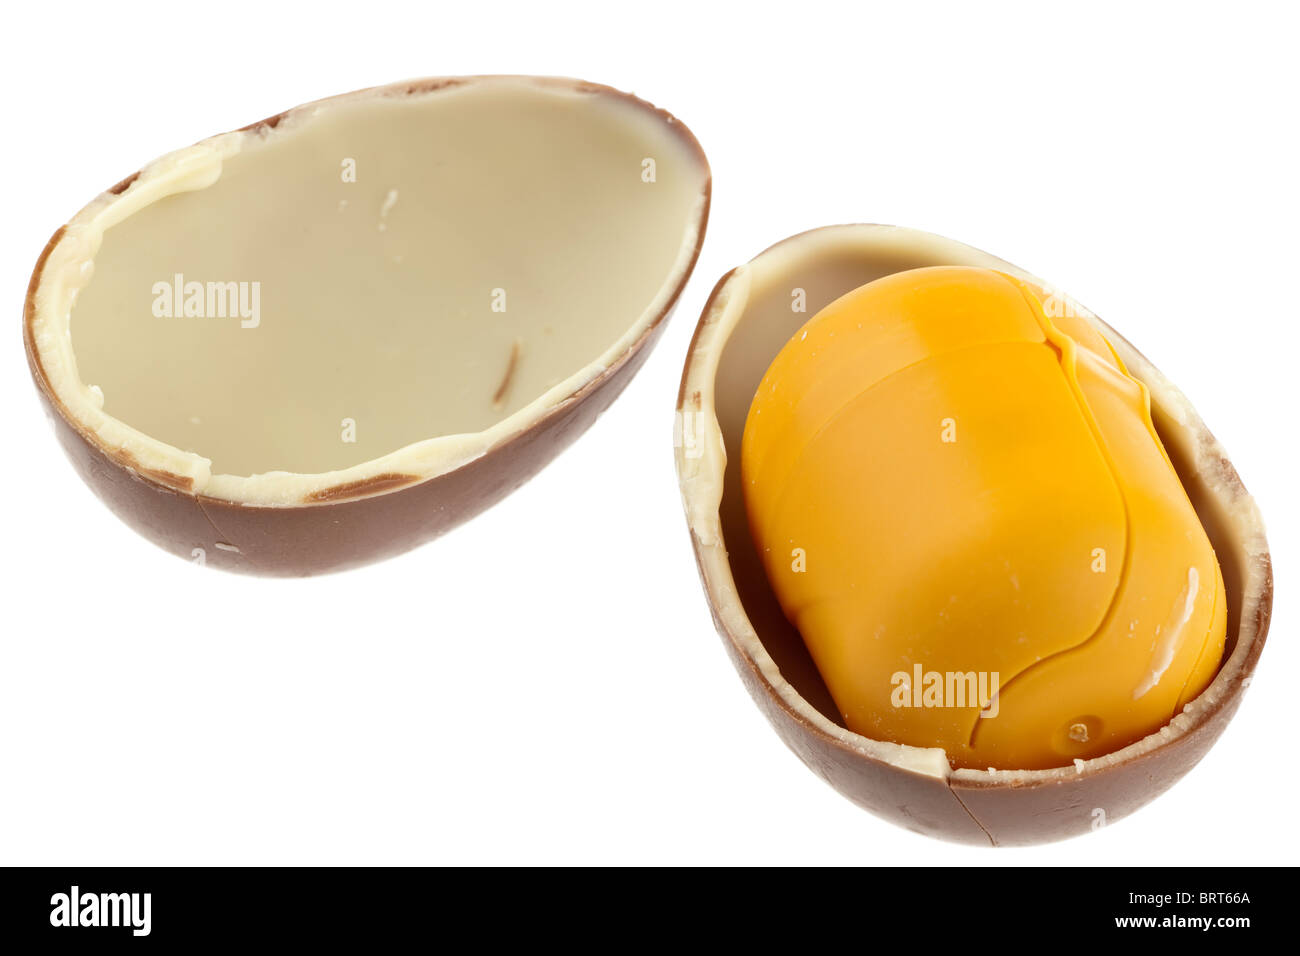 Kinder sorpresa uovo di cioccolato scorporato e suddiviso in due metà con contenitore in plastica Foto Stock